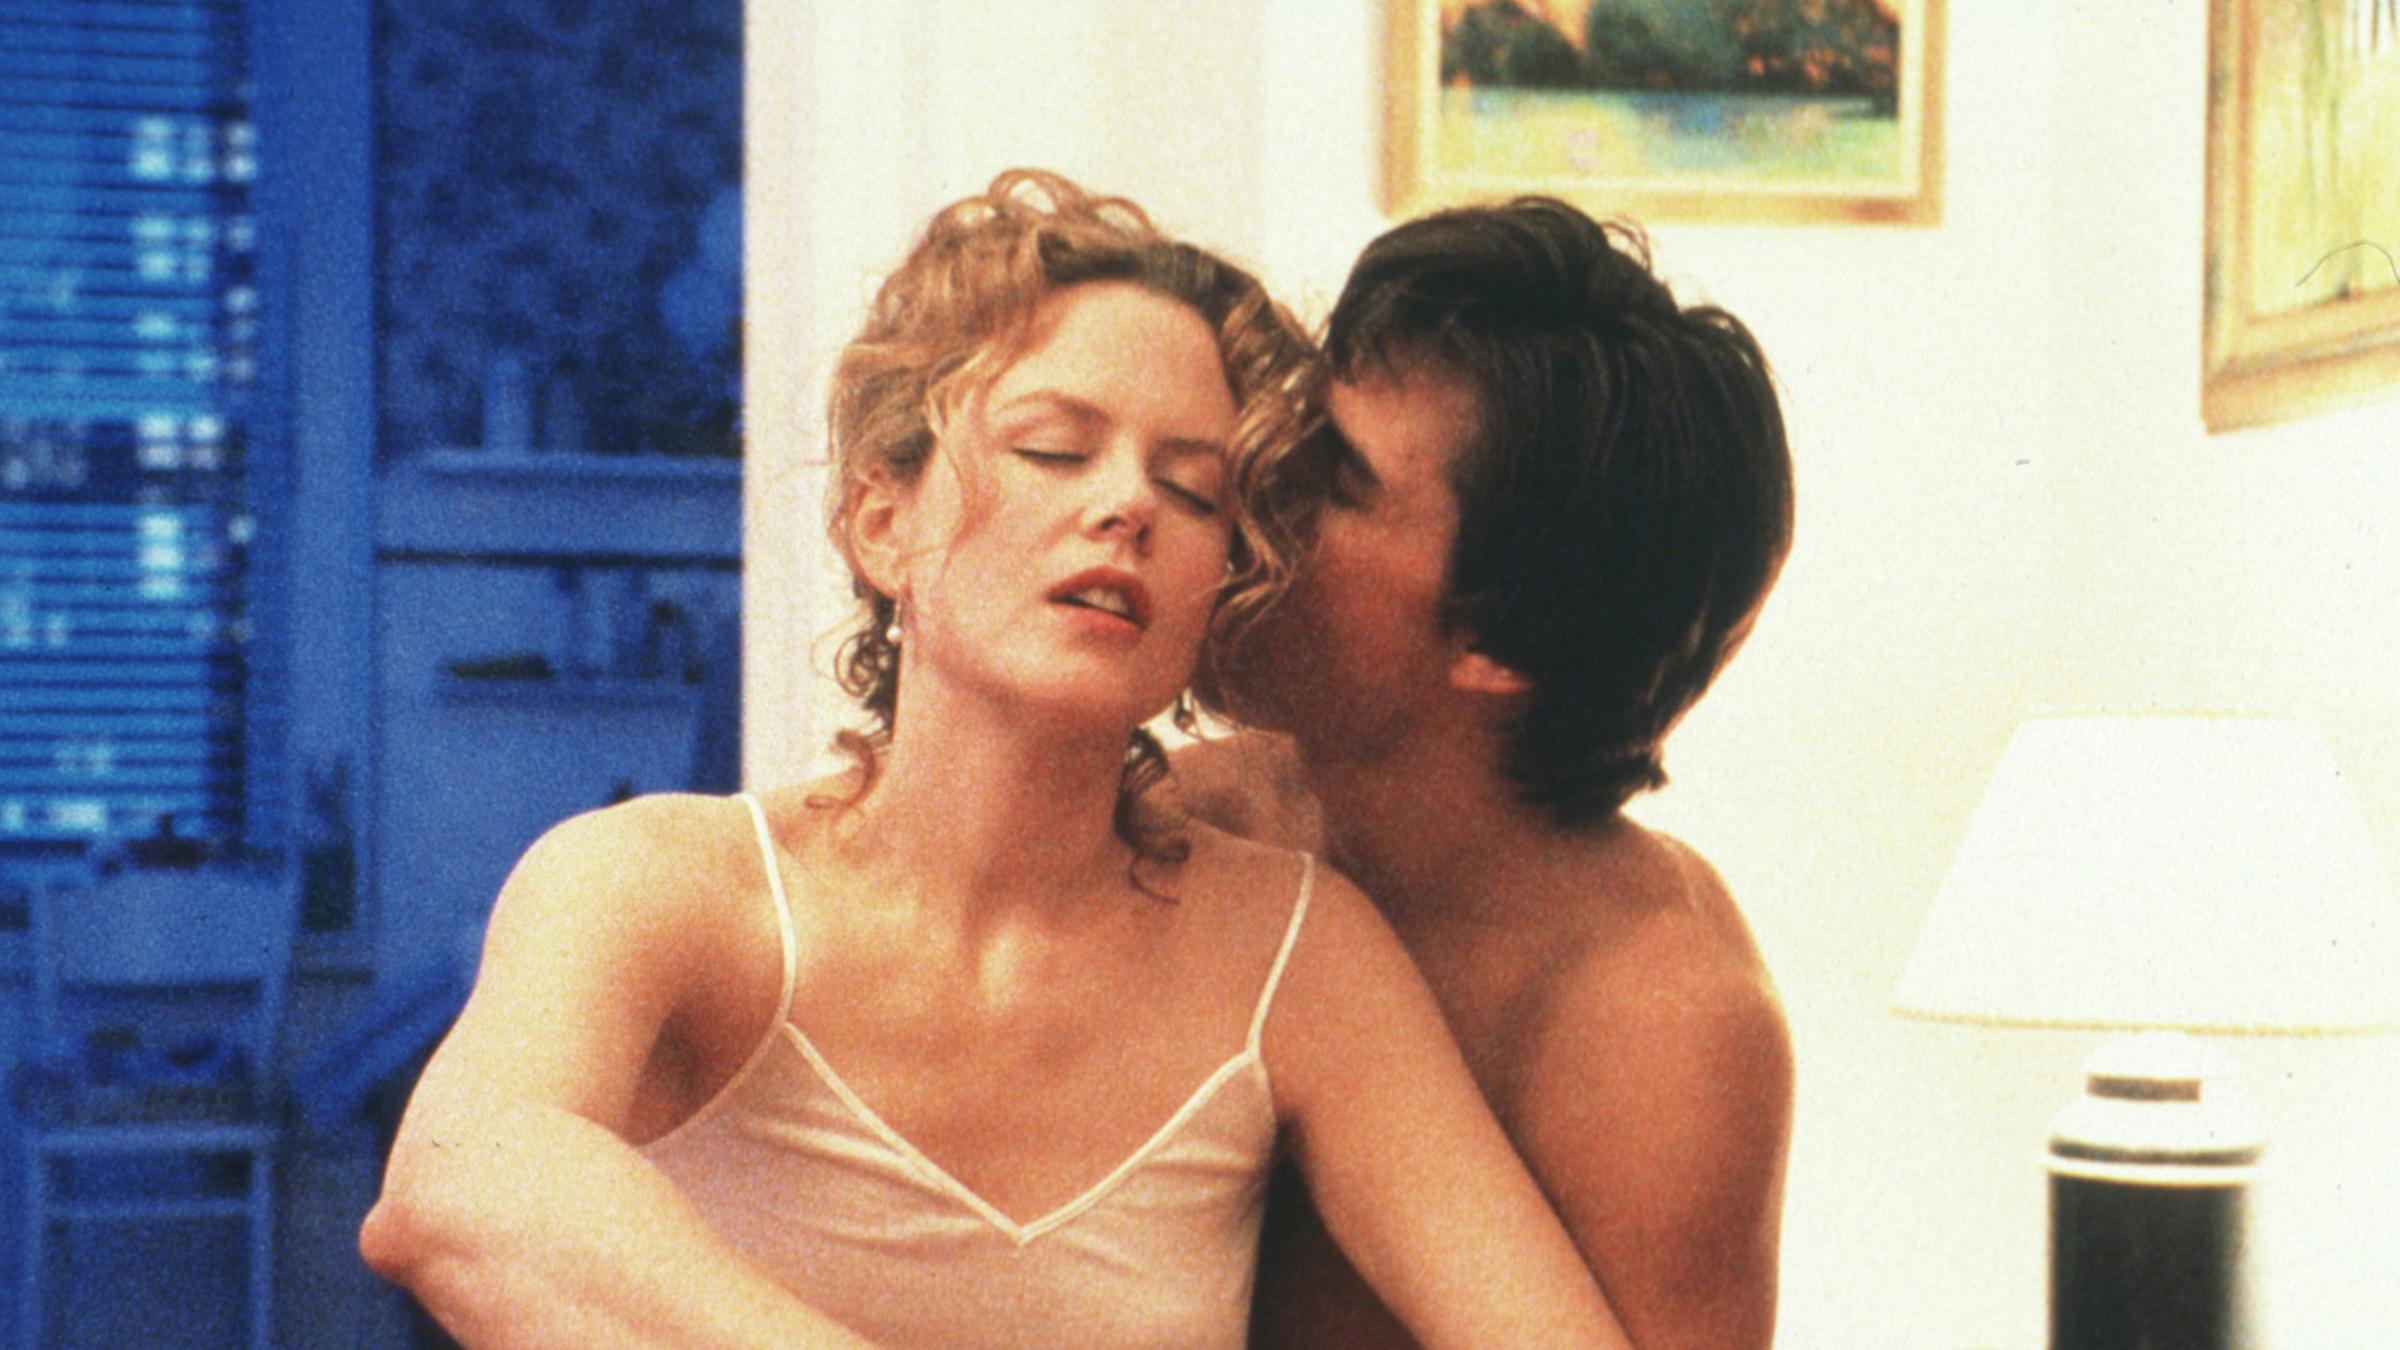 Tom Cruise und Nicole Kidman in "Eyes Wide Shut" von 1999